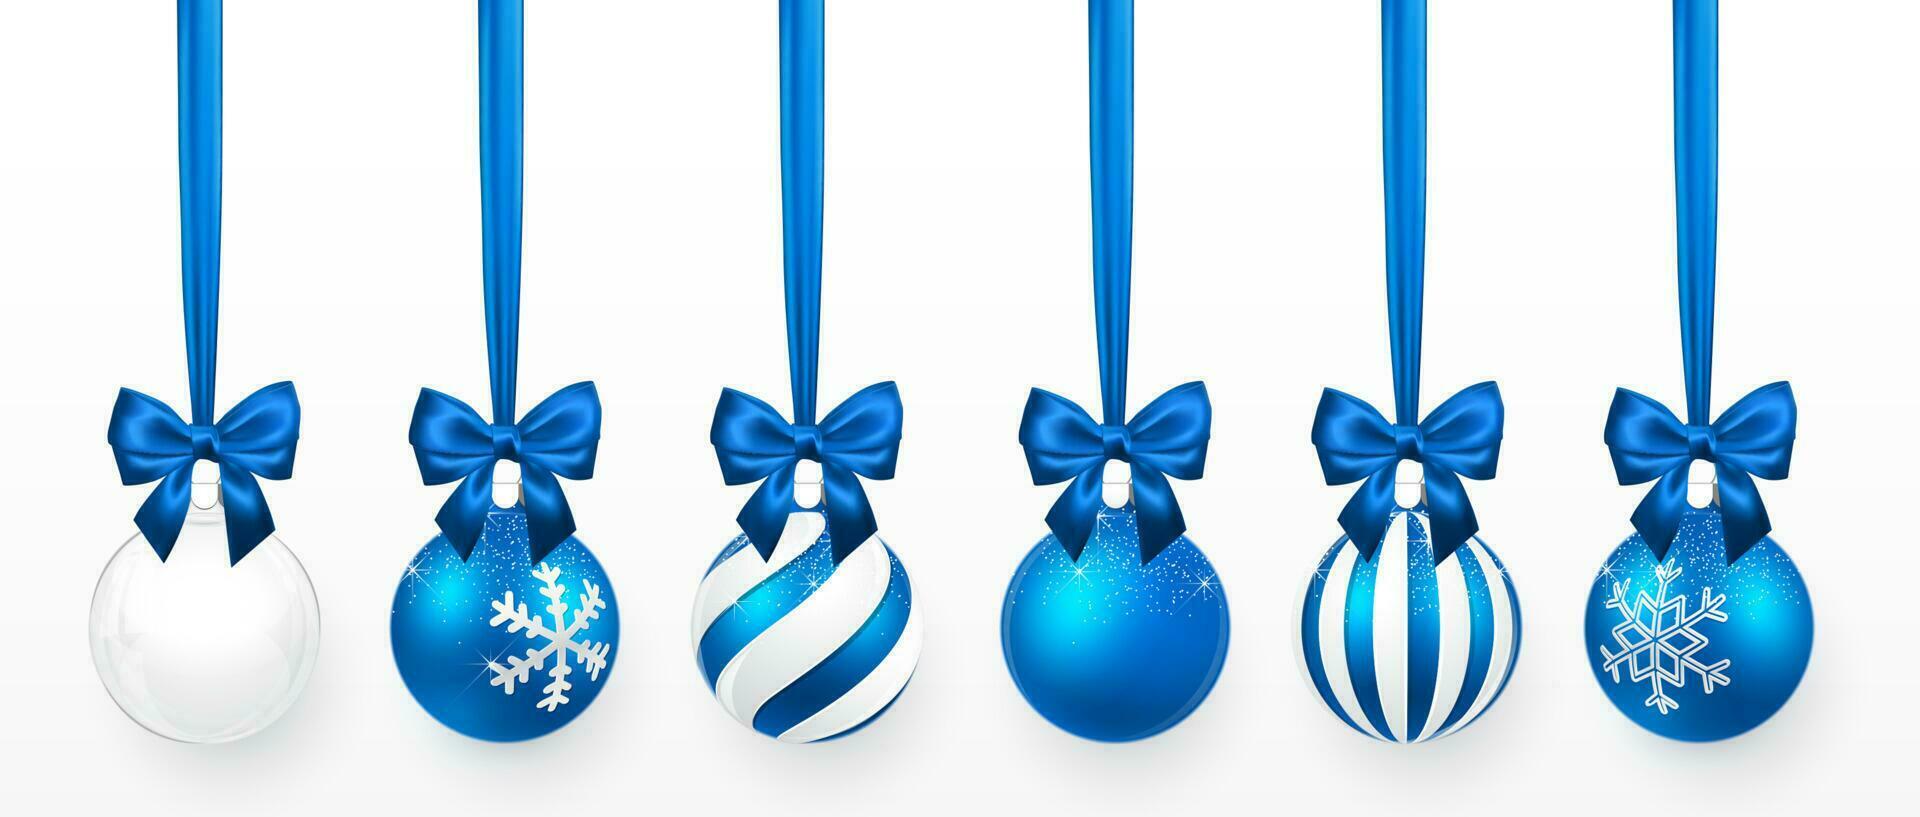 transparente y azul Navidad pelota con nieve efecto y azul arco colocar. Navidad vaso pelota en blanco antecedentes. fiesta decoración modelo. vector ilustración